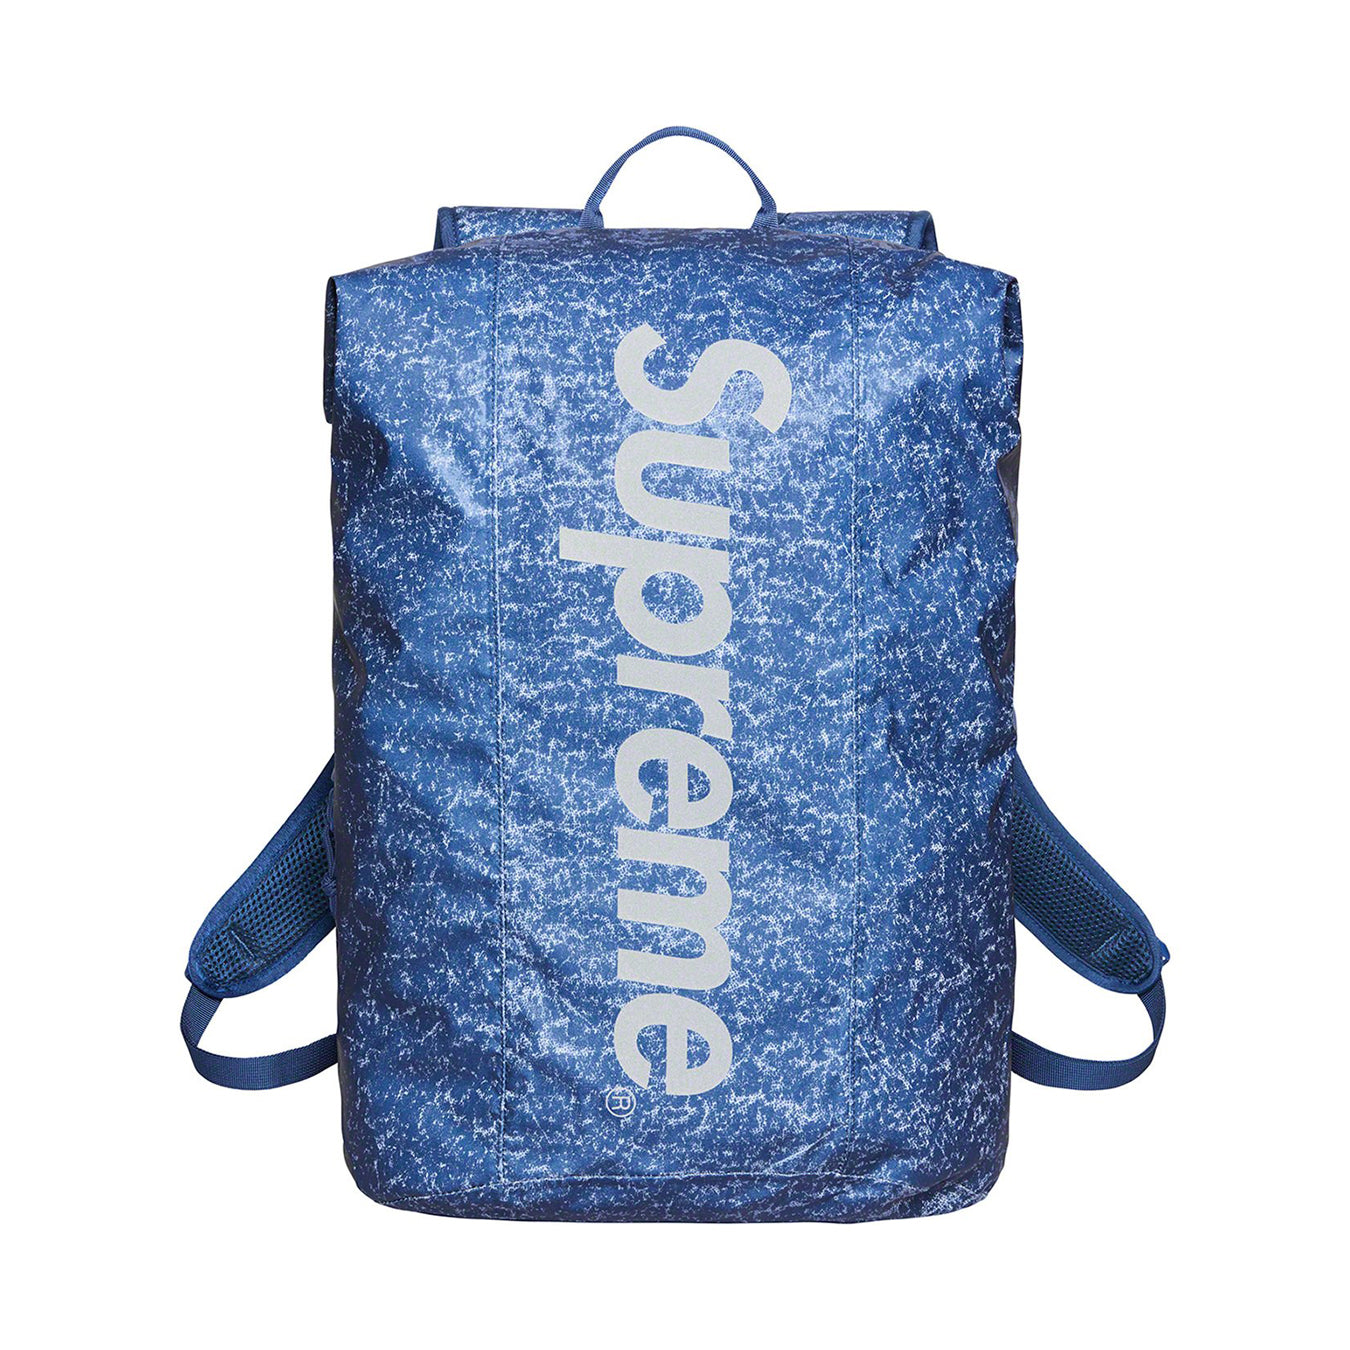 Supreme Waterproof Backpack R-1 - バッグ